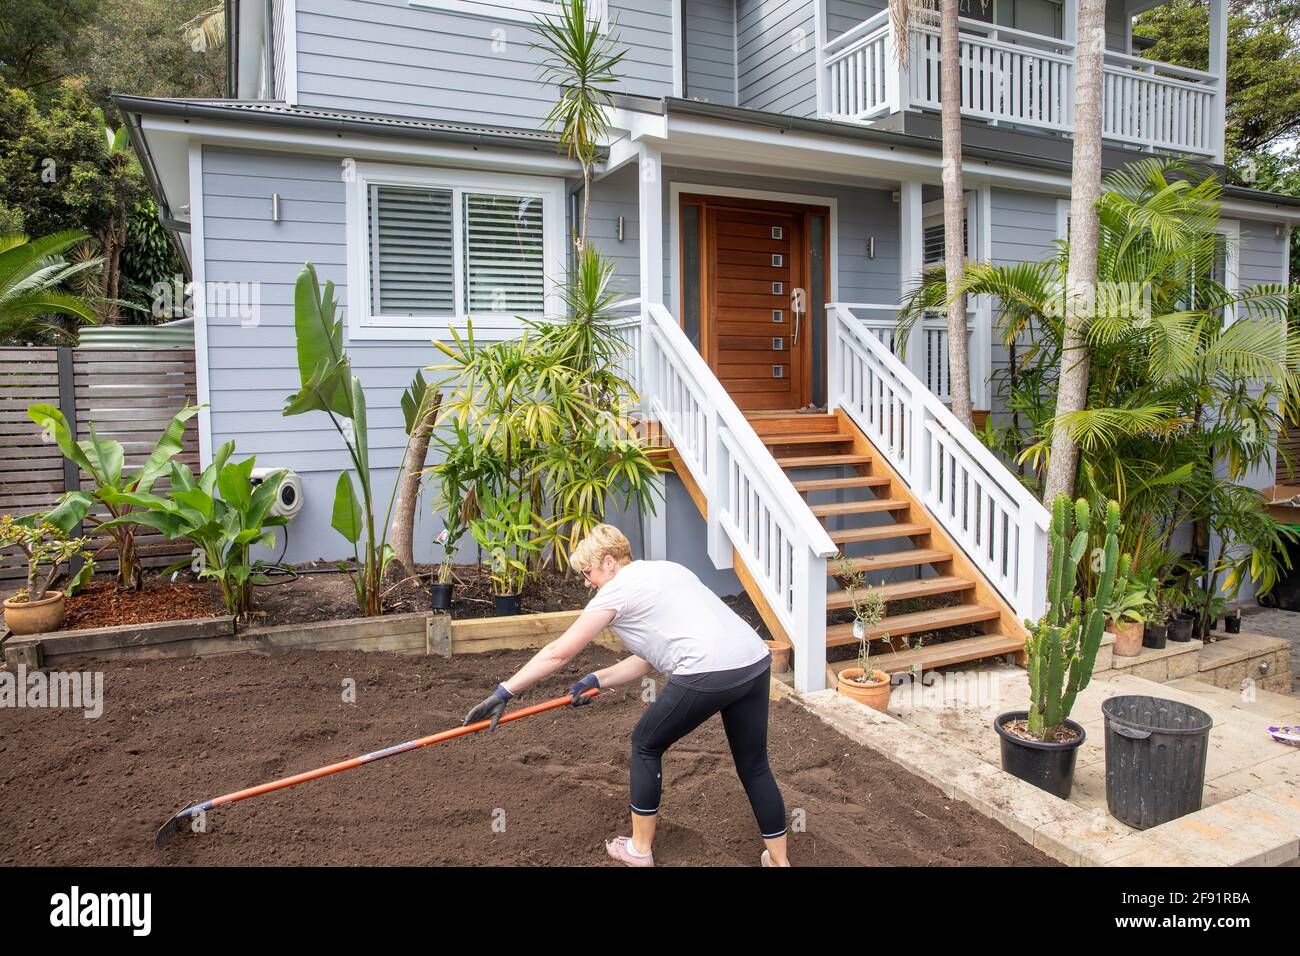 Australische Frau Modell freigegeben arbeiten auf dem Garten zu Hause Raking Boden, um für neue Rasen zu legen vorzubereiten, Sydney, NSW, Australien Stockfoto